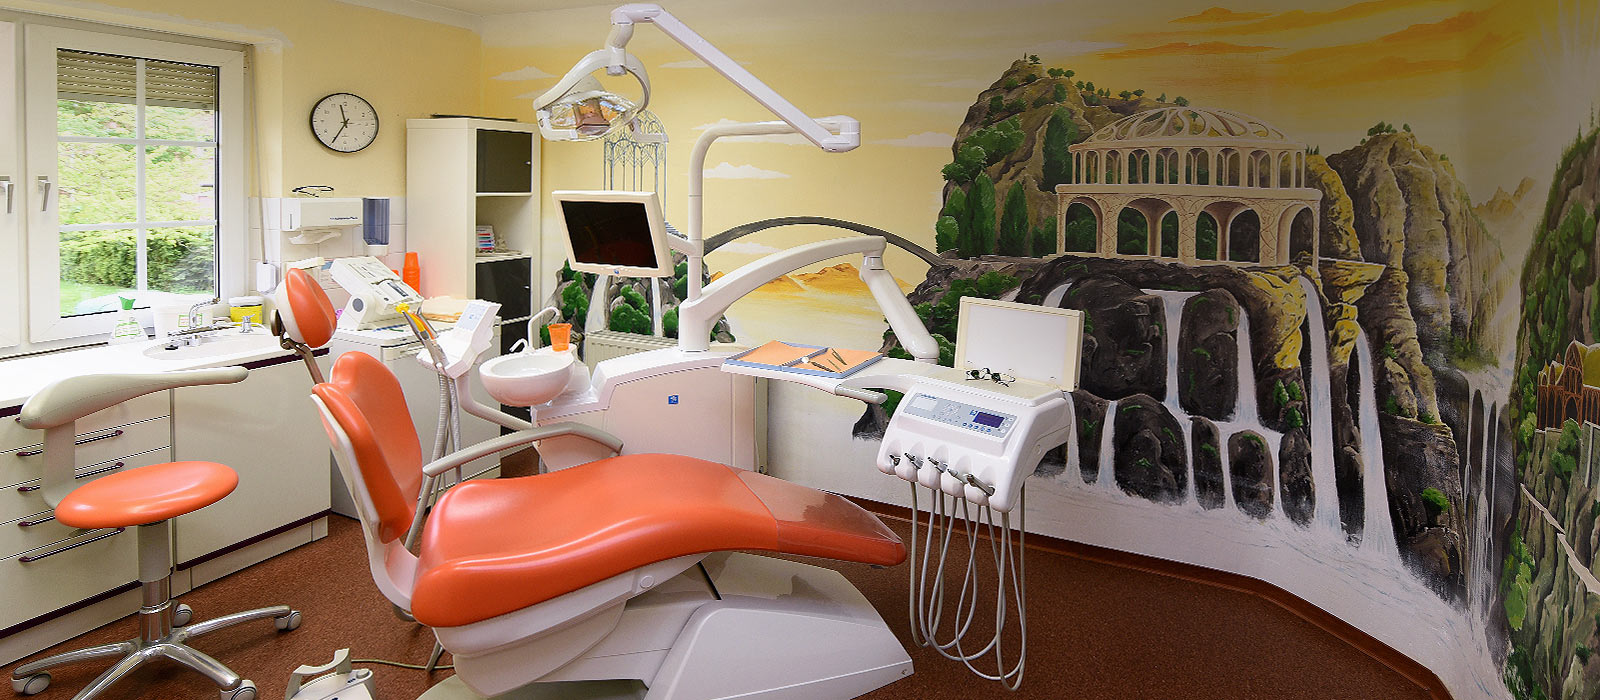 Behandlungsraum1 Zahnarztpraxis Schreiber